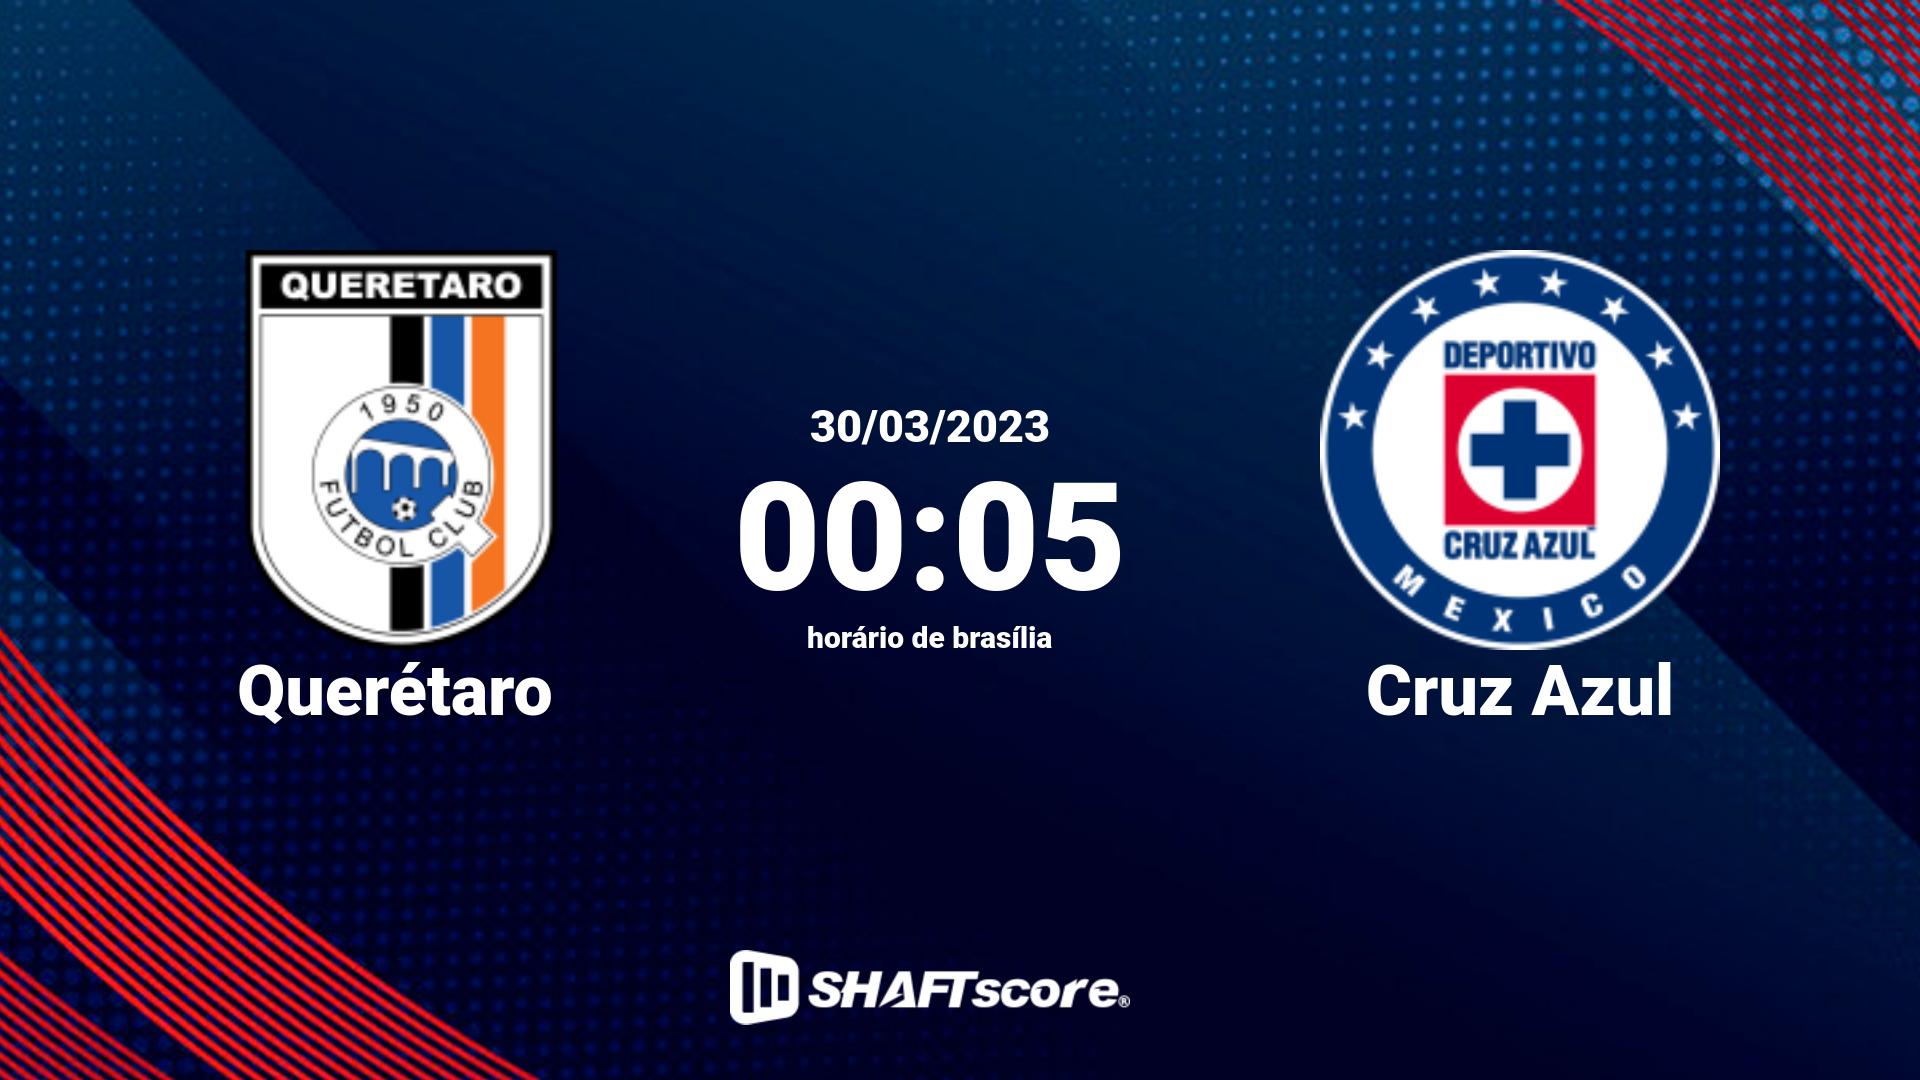 Estatísticas do jogo Querétaro vs Cruz Azul 30.03 00:05